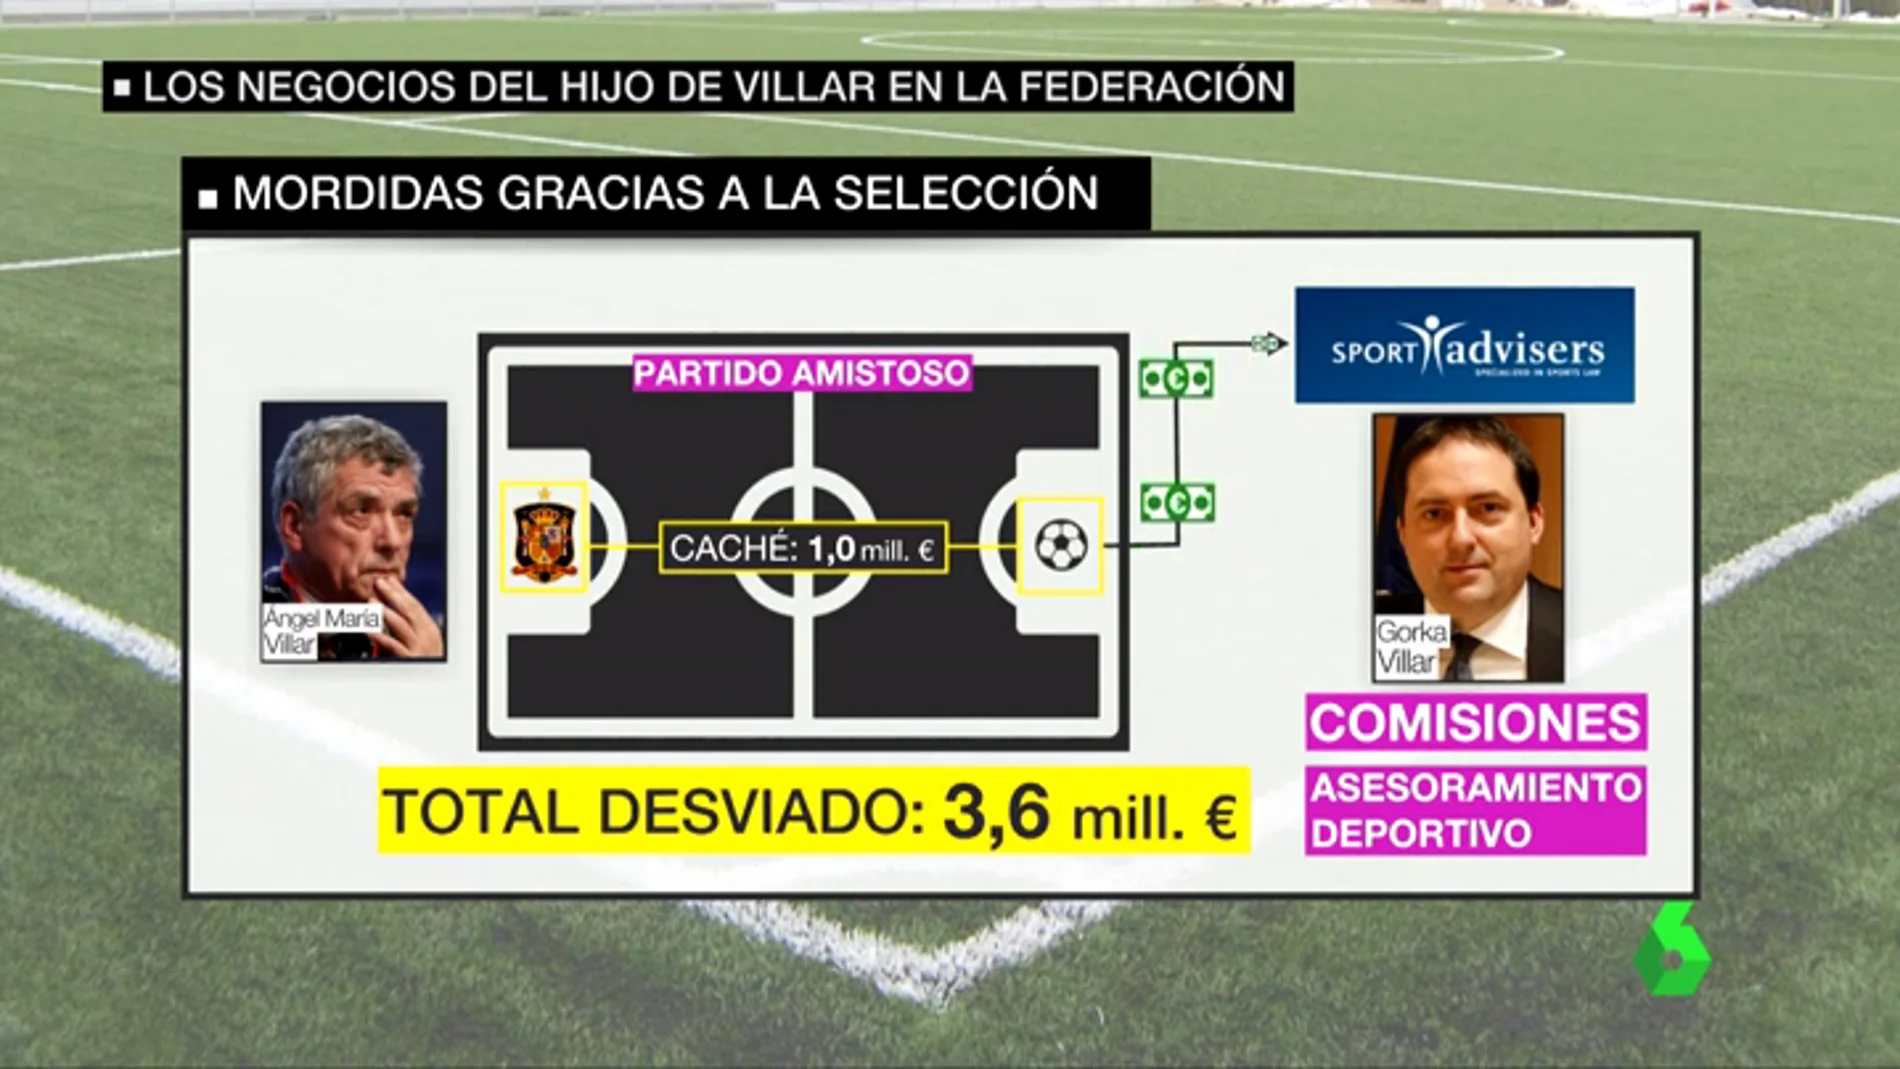 Los negocios del hijo de Villar en la Federación: así se aprovechó de los amistosos de la Selección